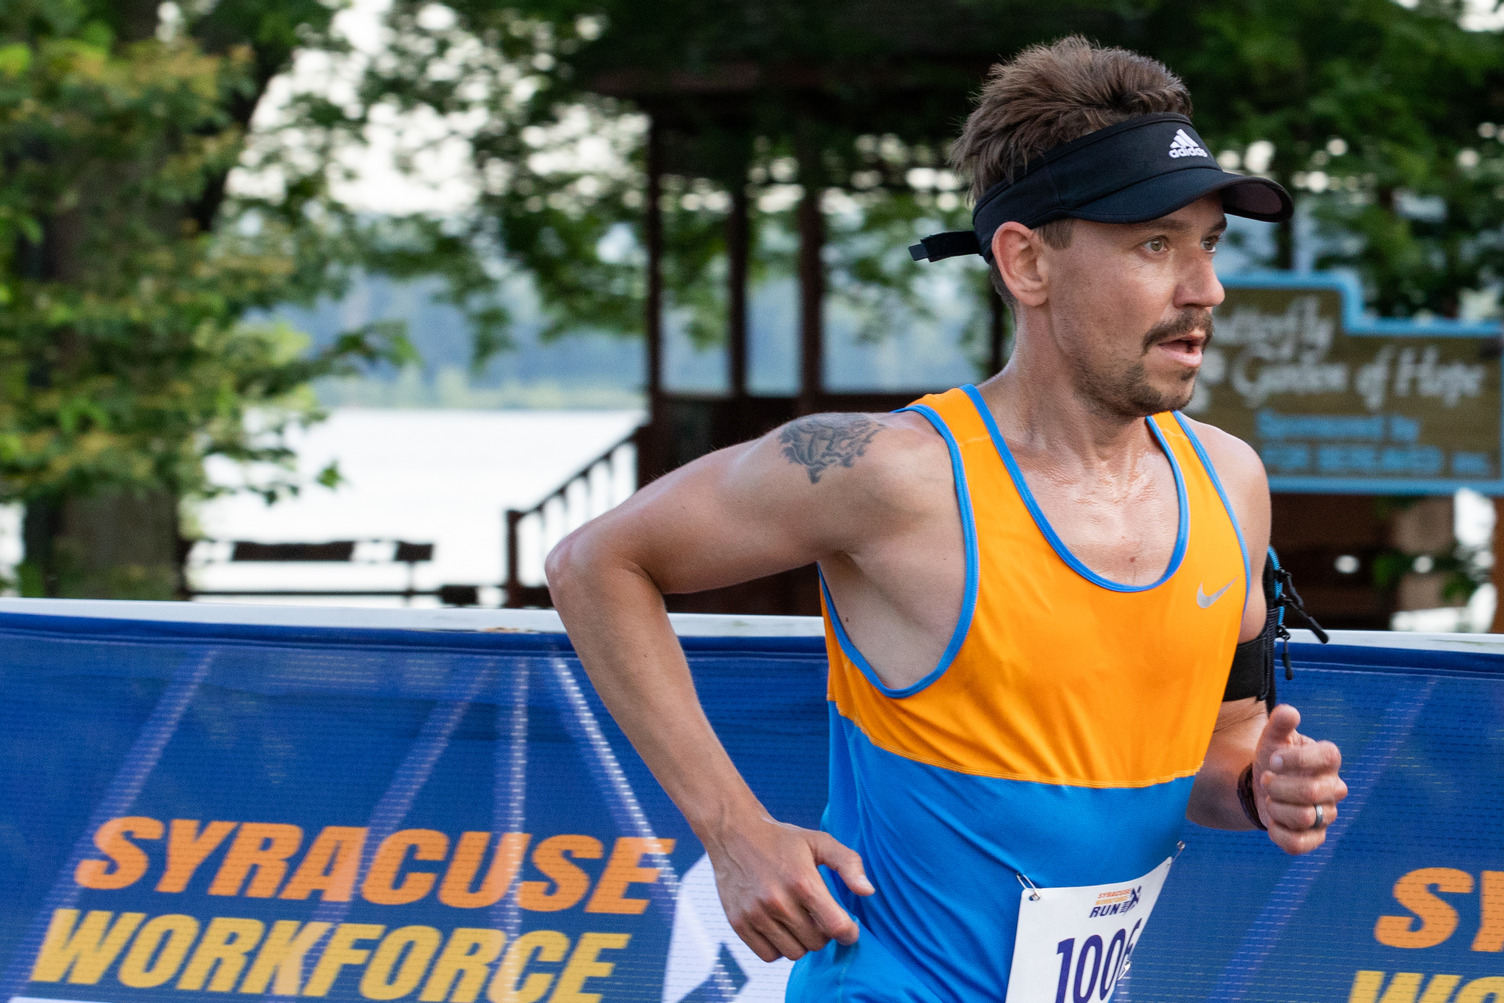 Denis Samburskiy participates in the Syracuse Workforce Run